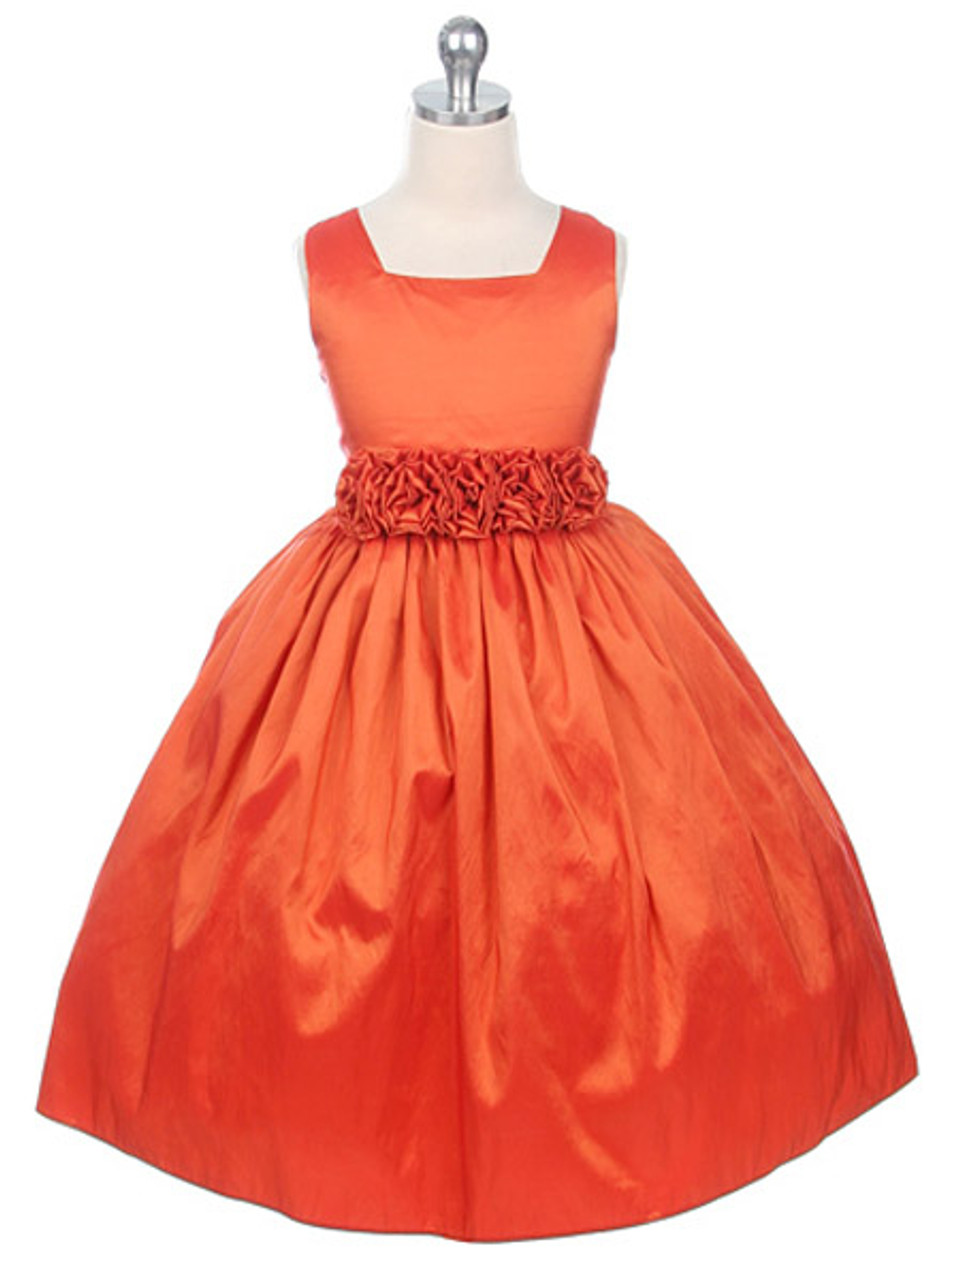 Нарядное платье на девочку оранжевого цвета